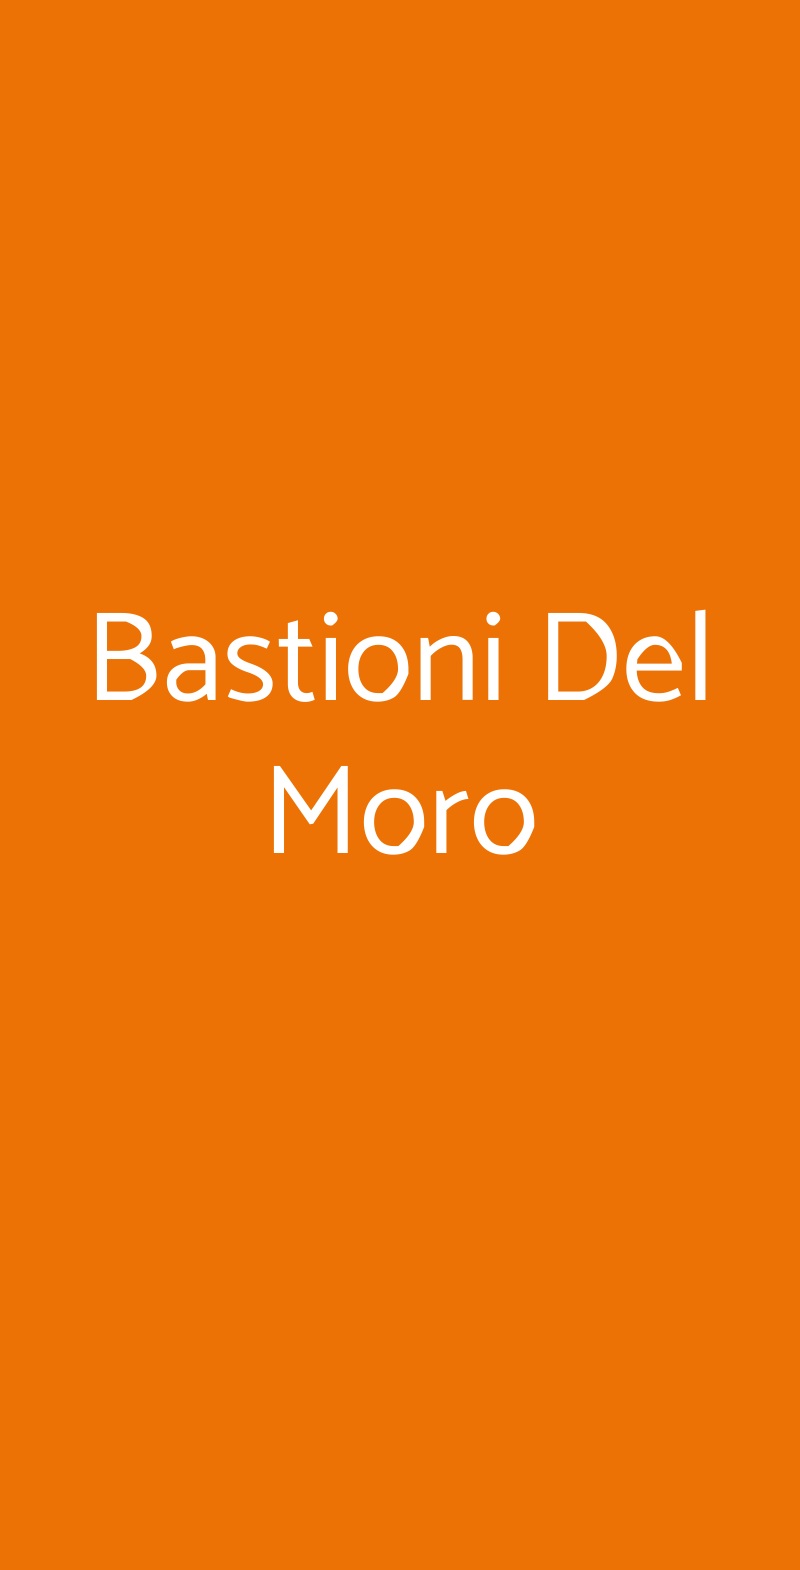 Bastioni Del Moro Padova menù 1 pagina